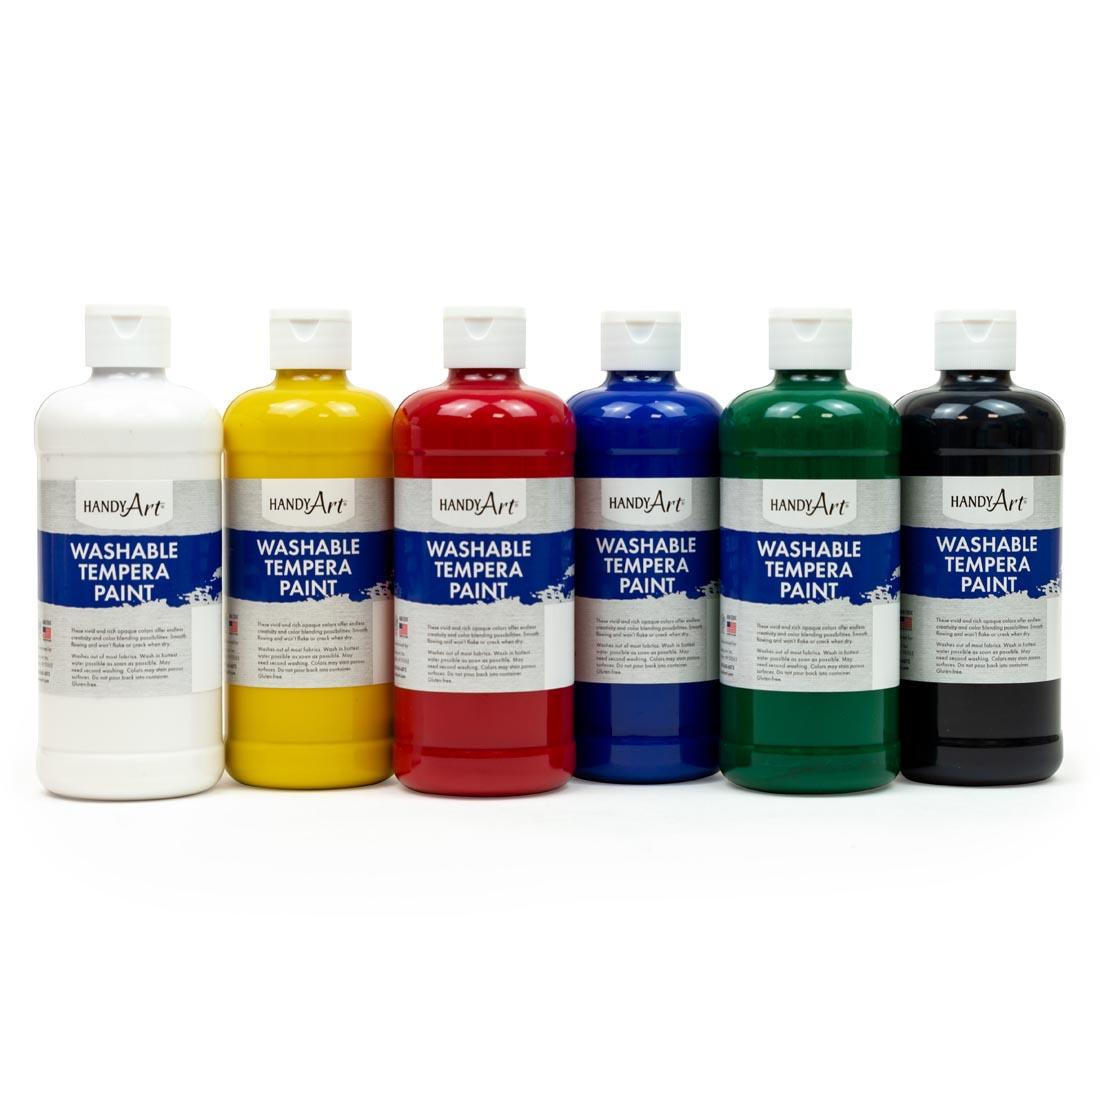 Handy Art Washable Tempera Paint 6-Color Pint Set